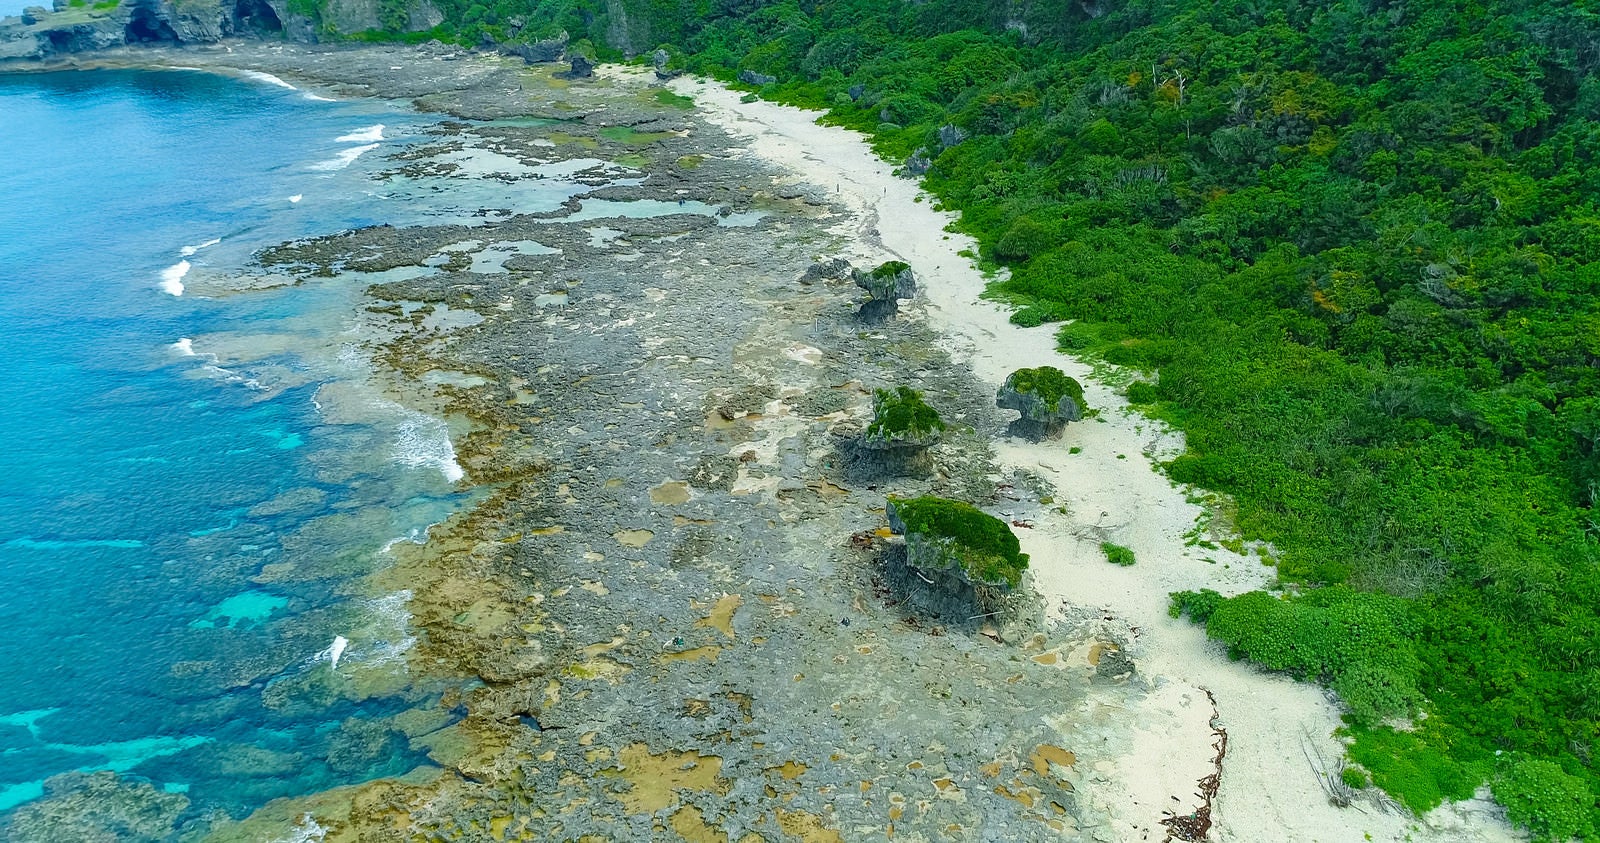 「犬の門蓋の奇岩と徳之島の青い海（空撮）」の写真